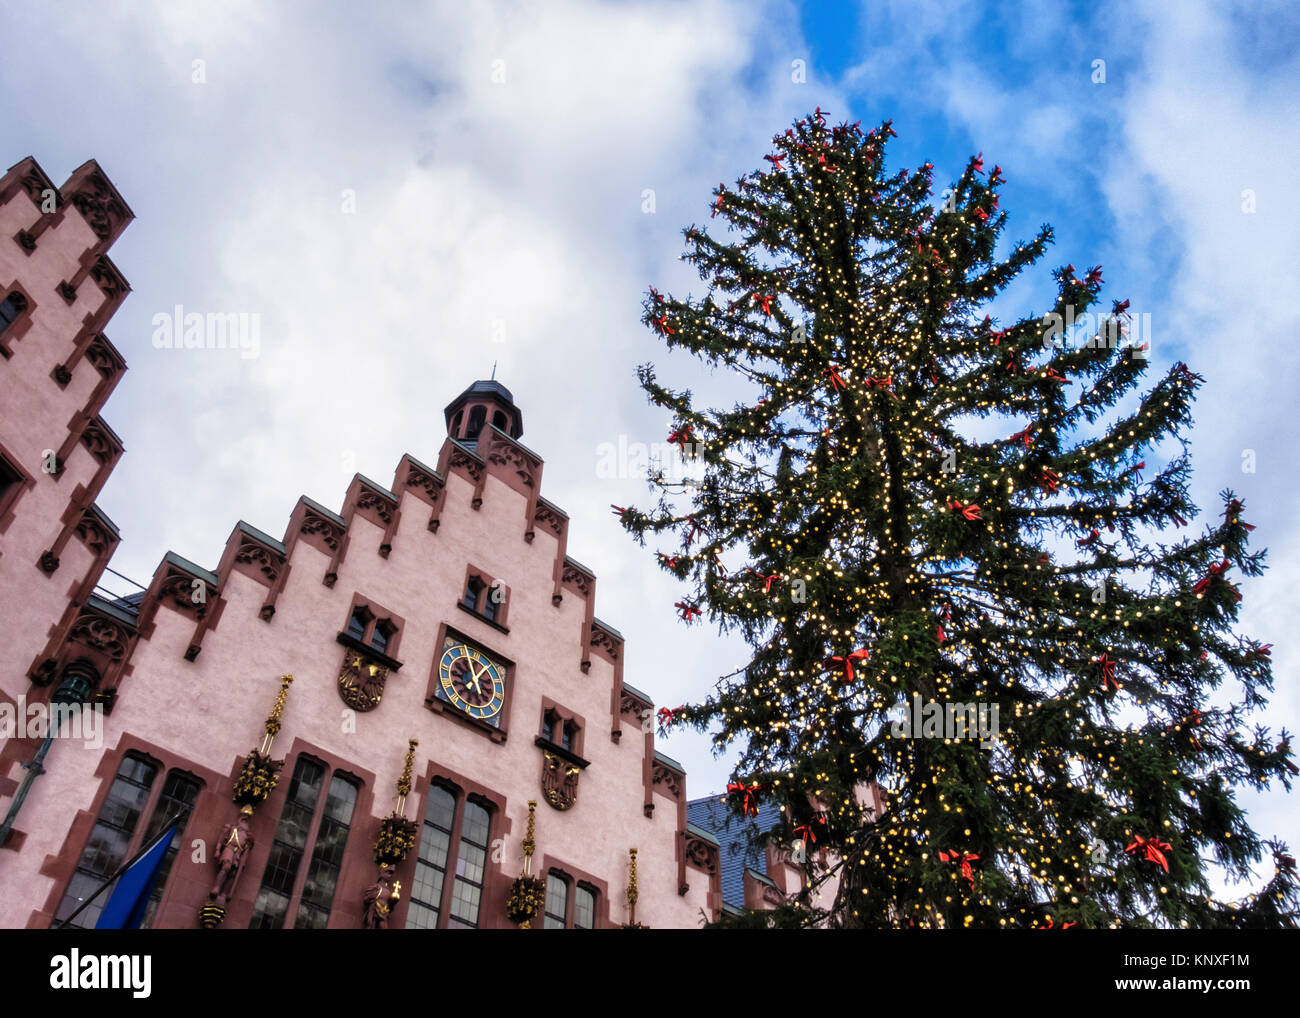 Germania Frankfurt Città Vecchia, Römerberg piazza Römer City Hall.edificio storico con il tradizionale albero di Natale. Il medievale Palazzo in stile con thr Foto Stock